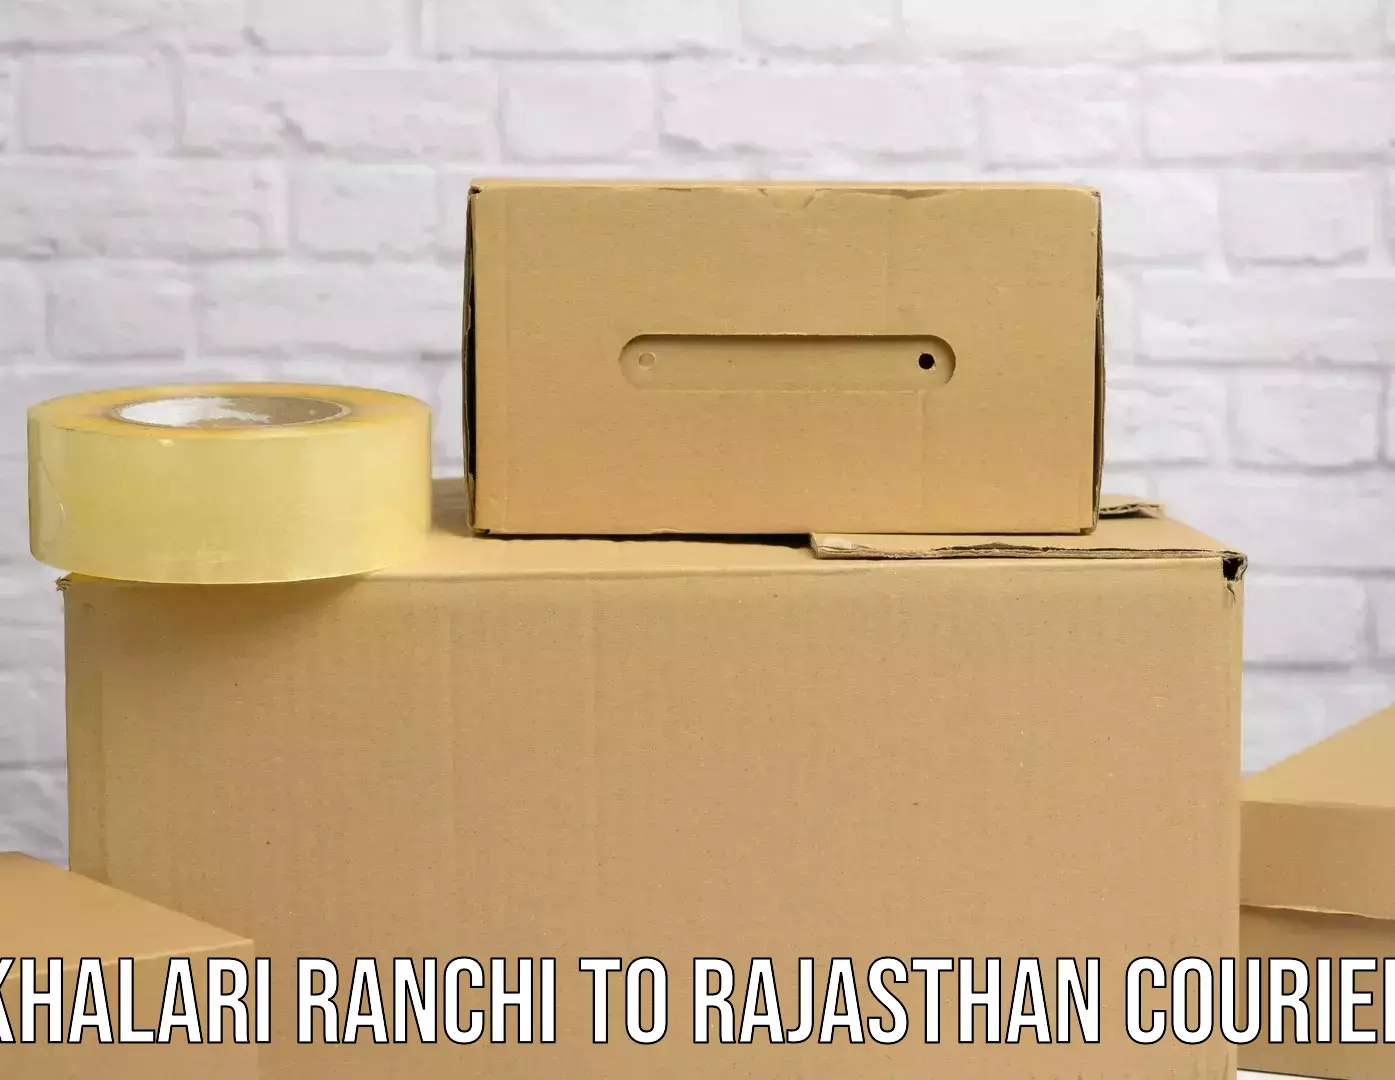 Advanced tracking systems Khalari Ranchi to Rajasthan